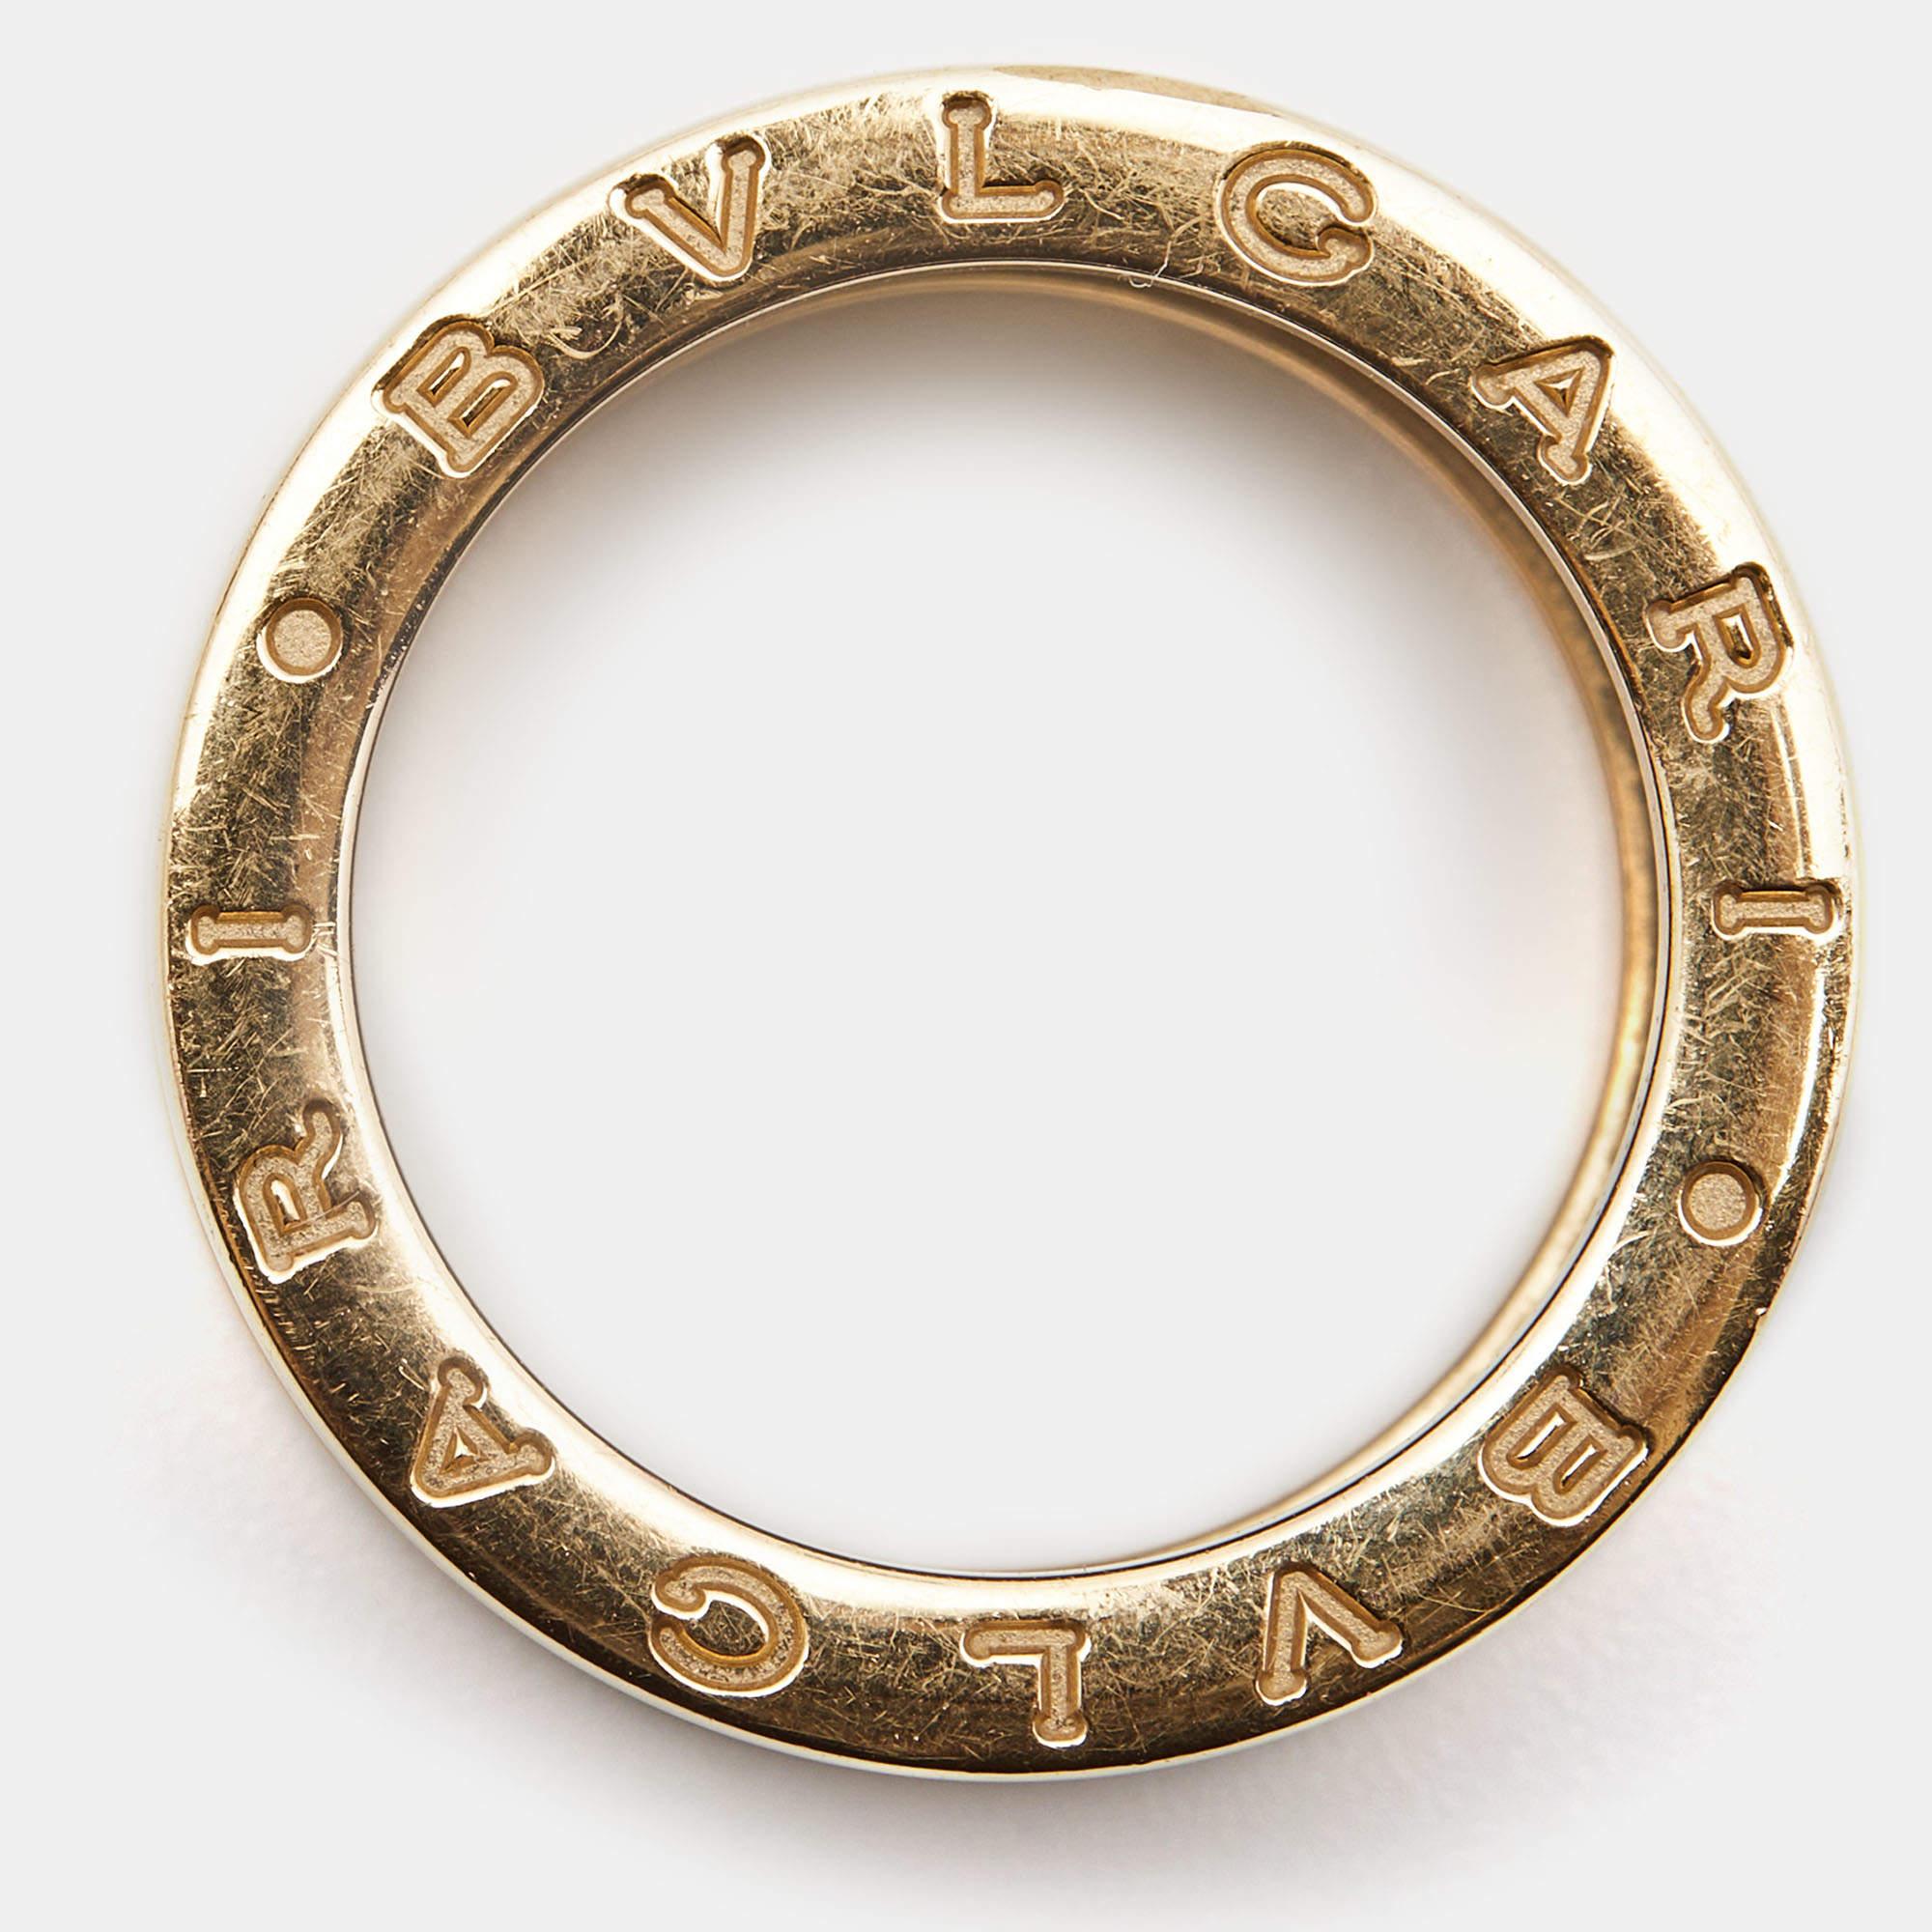 Unique et moderne, cette charmante bague à anneau B.Zero1 est issue de l'une des collections emblématiques de Bvlgari. Magnifiquement réalisé en or rose 18 carats dans un style à quatre bandes, il est gravé du logo BVLGARI. Inspirée par le Colisée,